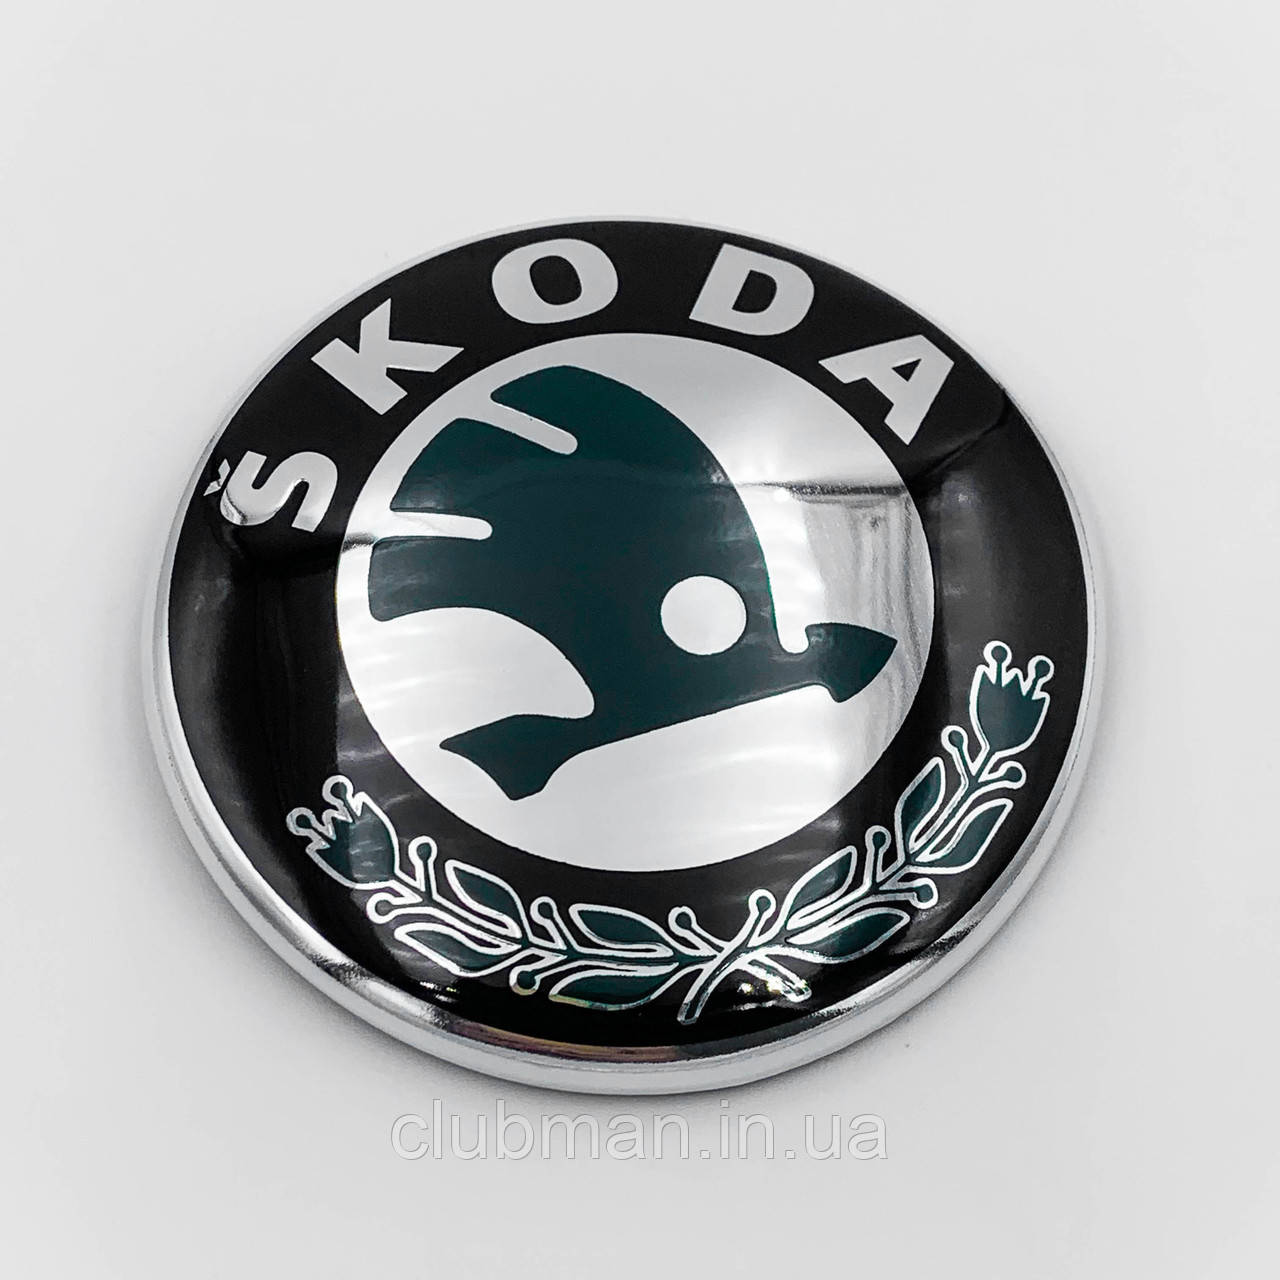 Емблема Skoda (Шкода) 89 мм значок Octavia, Fabia, Rapid, Superb